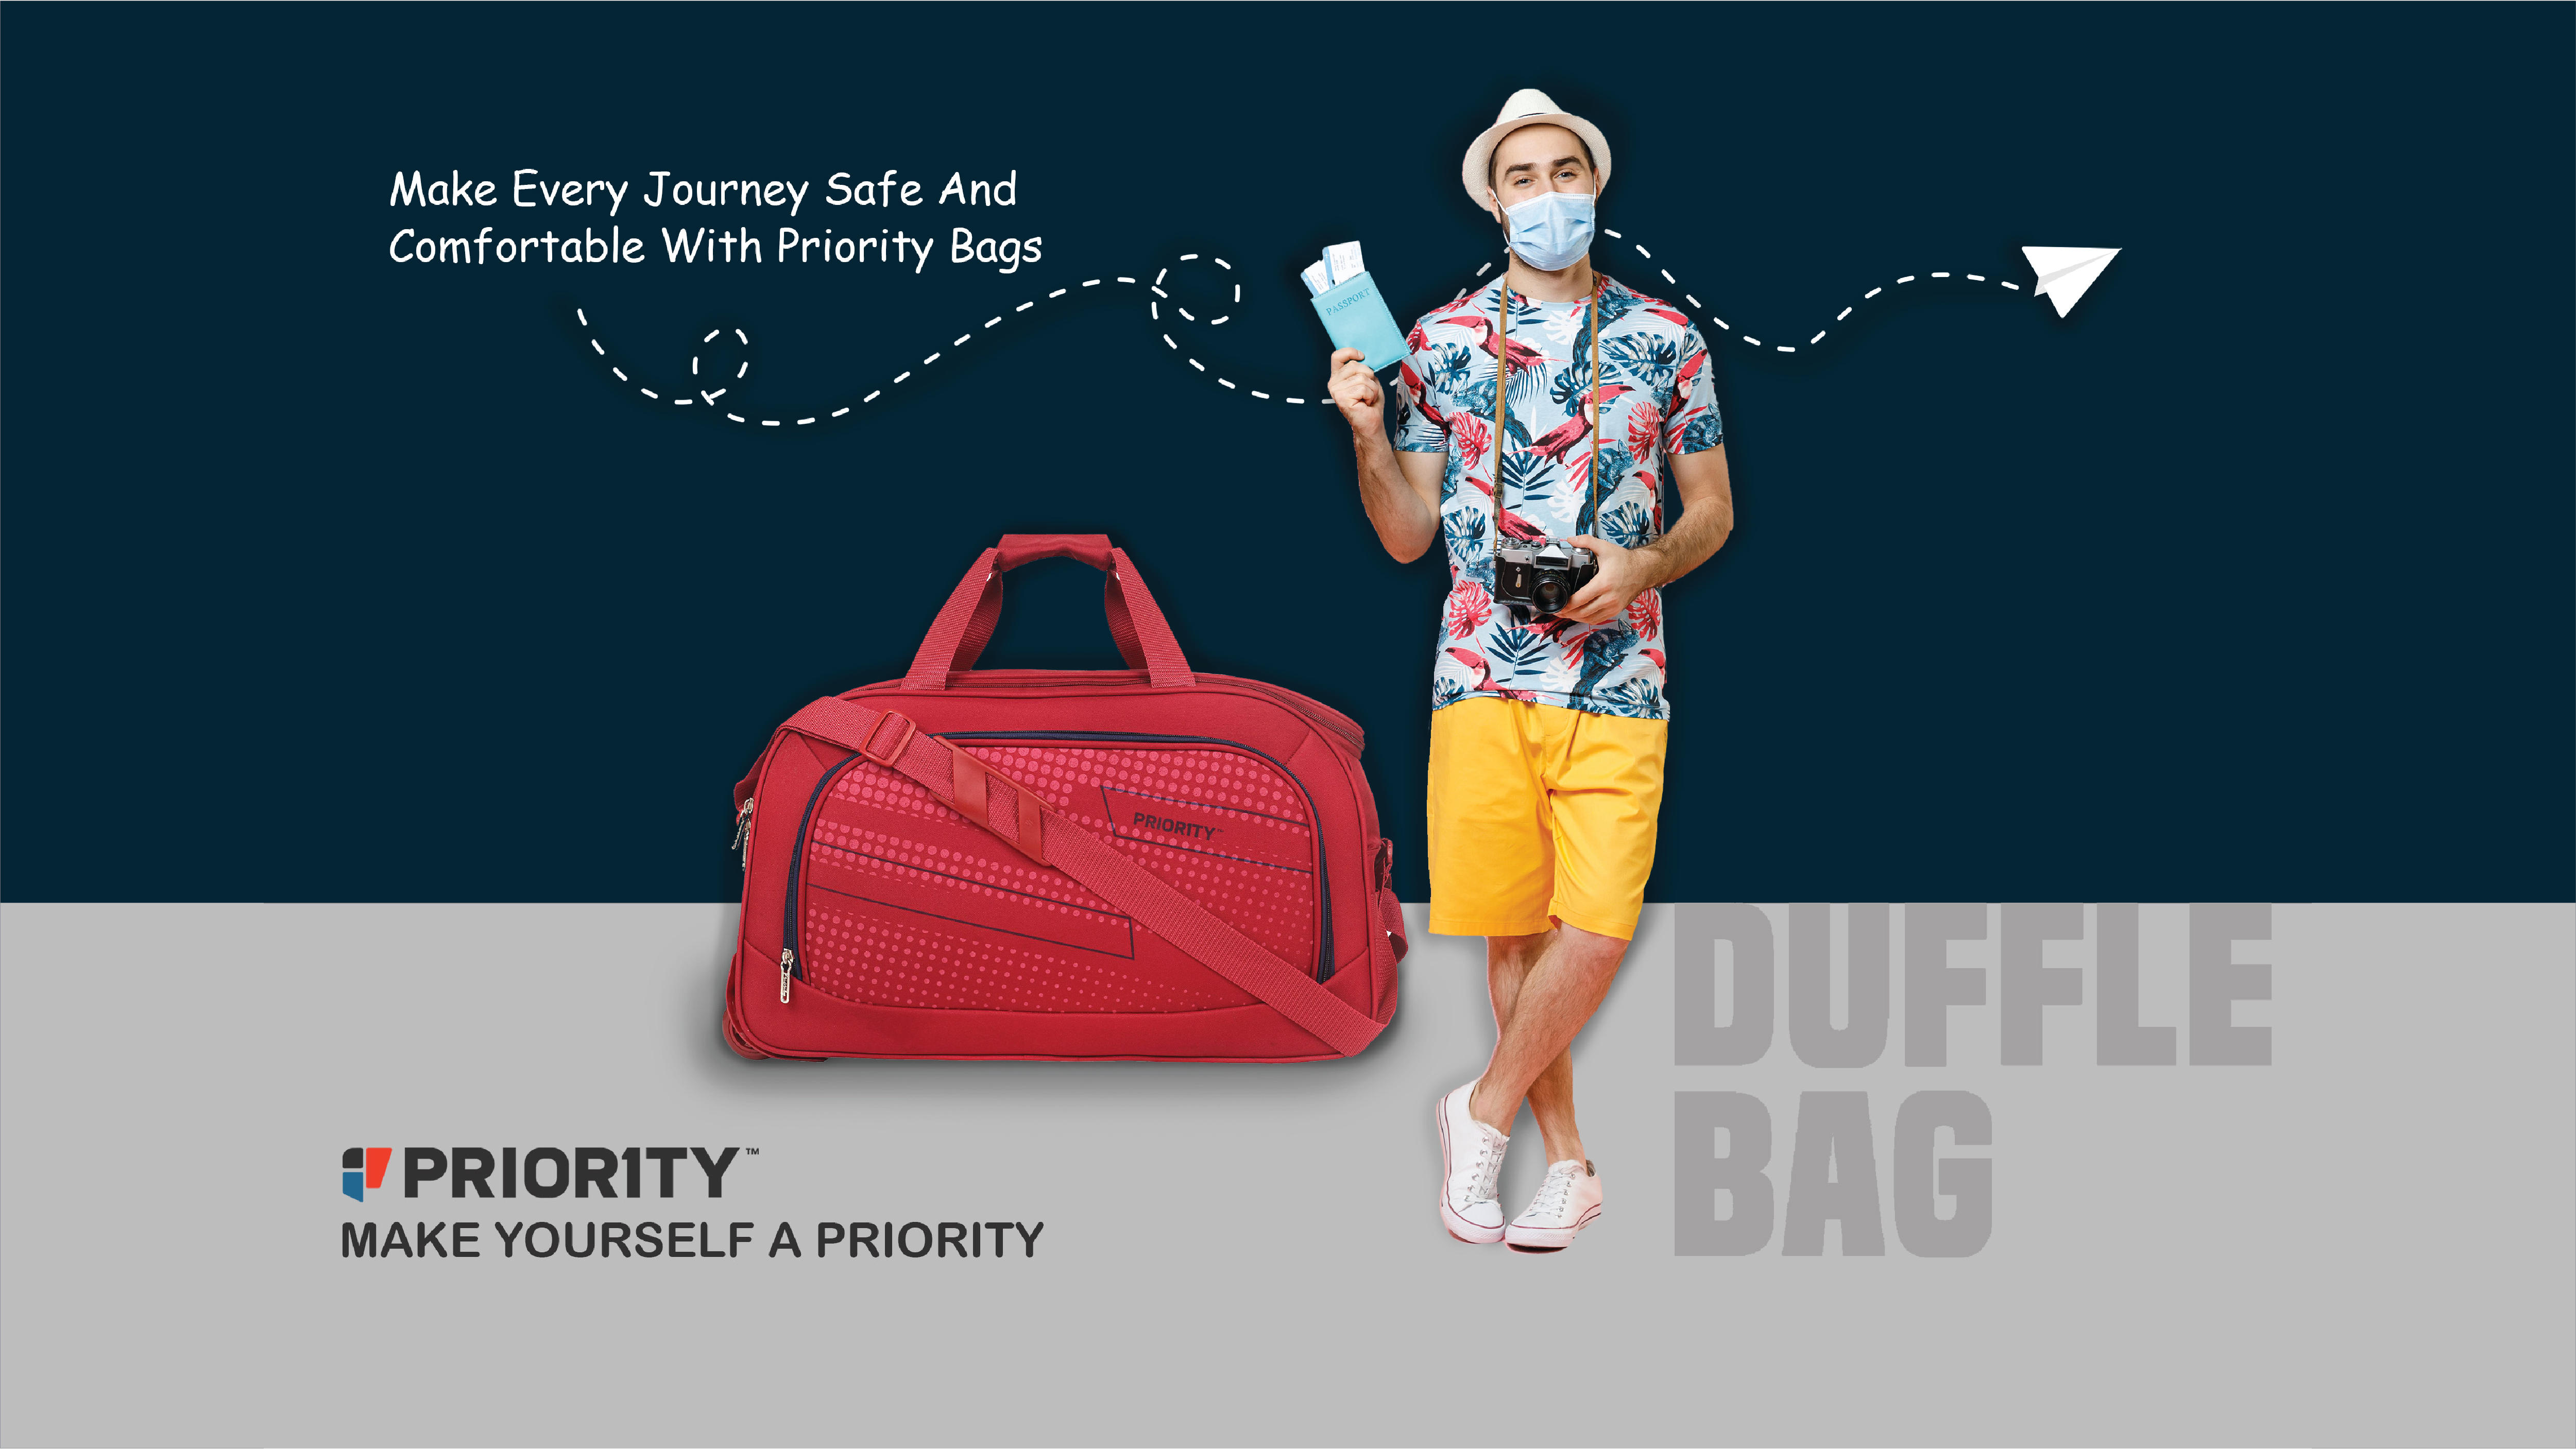 स्कूल बैग में कौन सी चीज हमेशा उपलब्ध होनी चाहिए ? - Quora